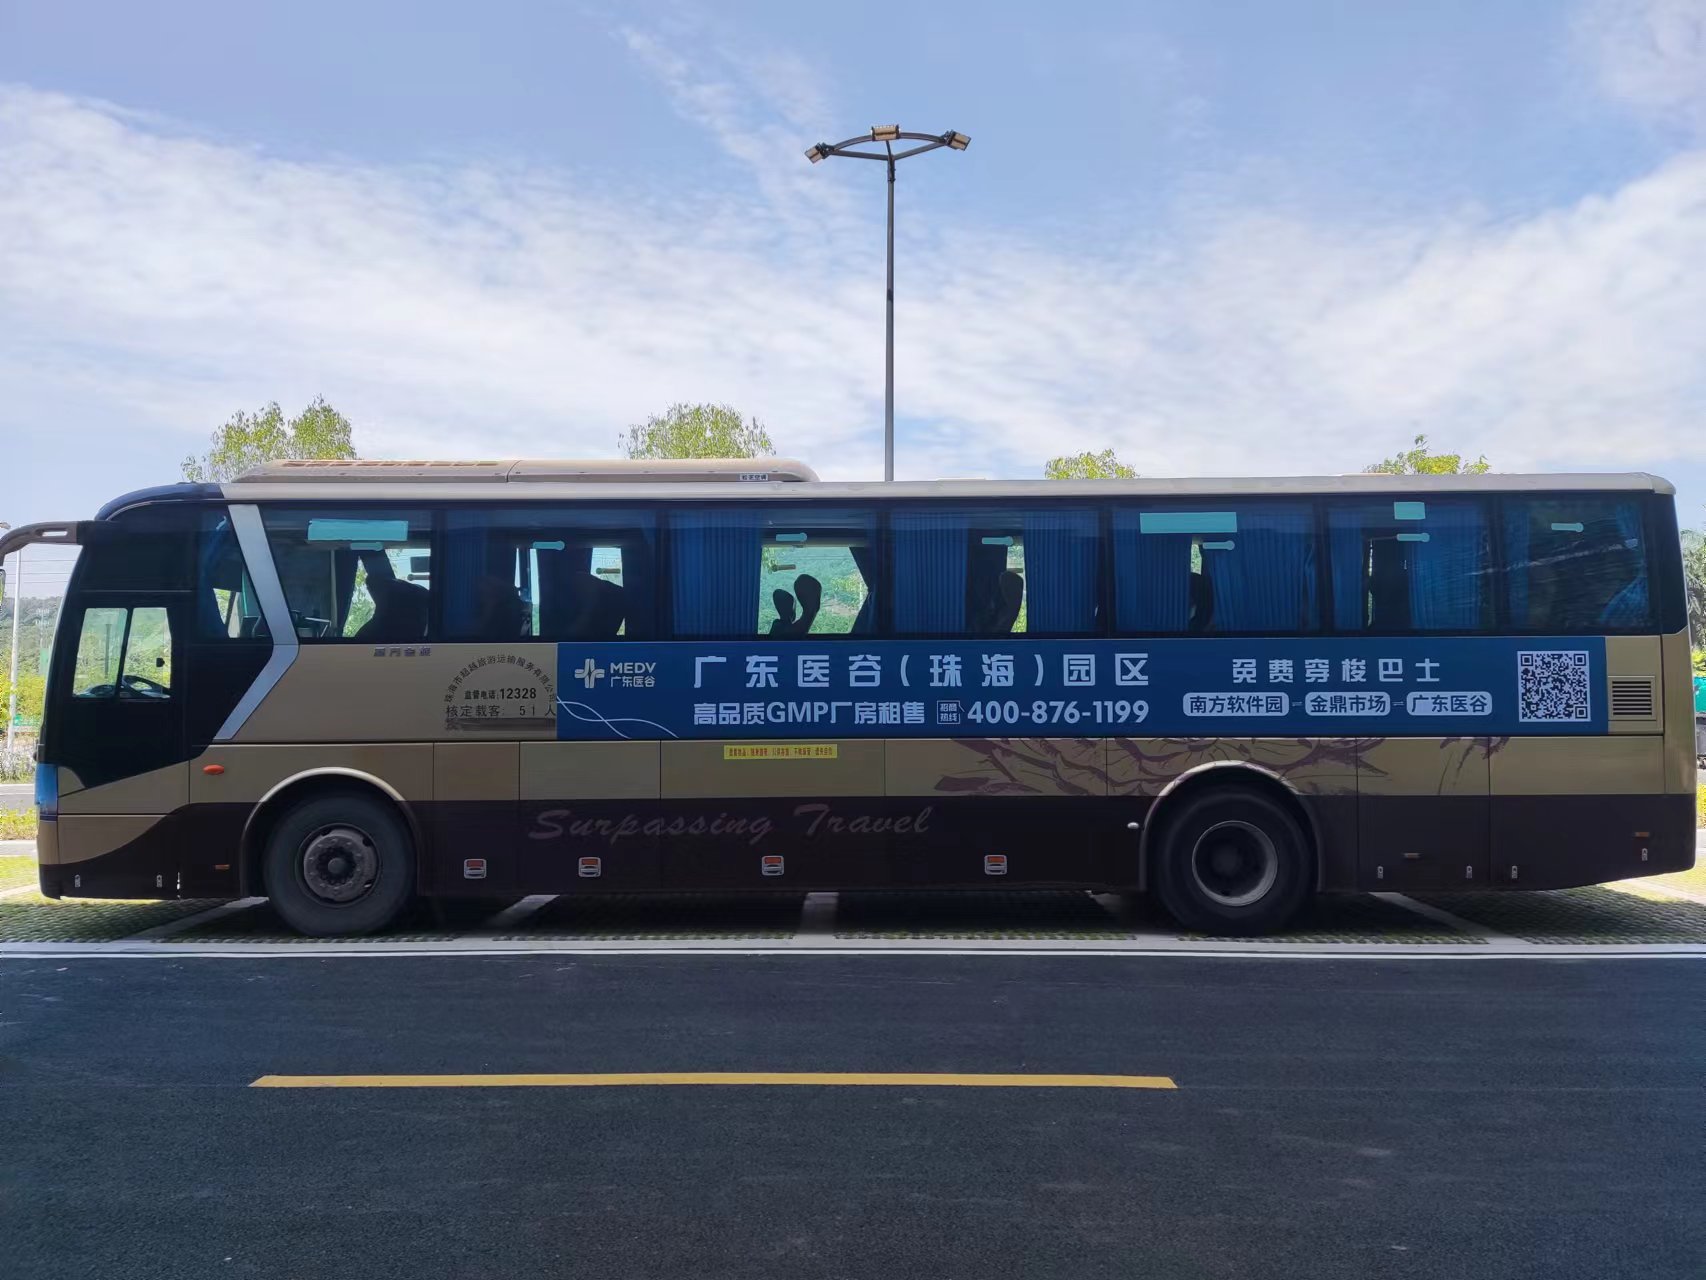 免费出行 | 广东医谷·珠海生命科学园穿梭巴士专线正式开通运营！